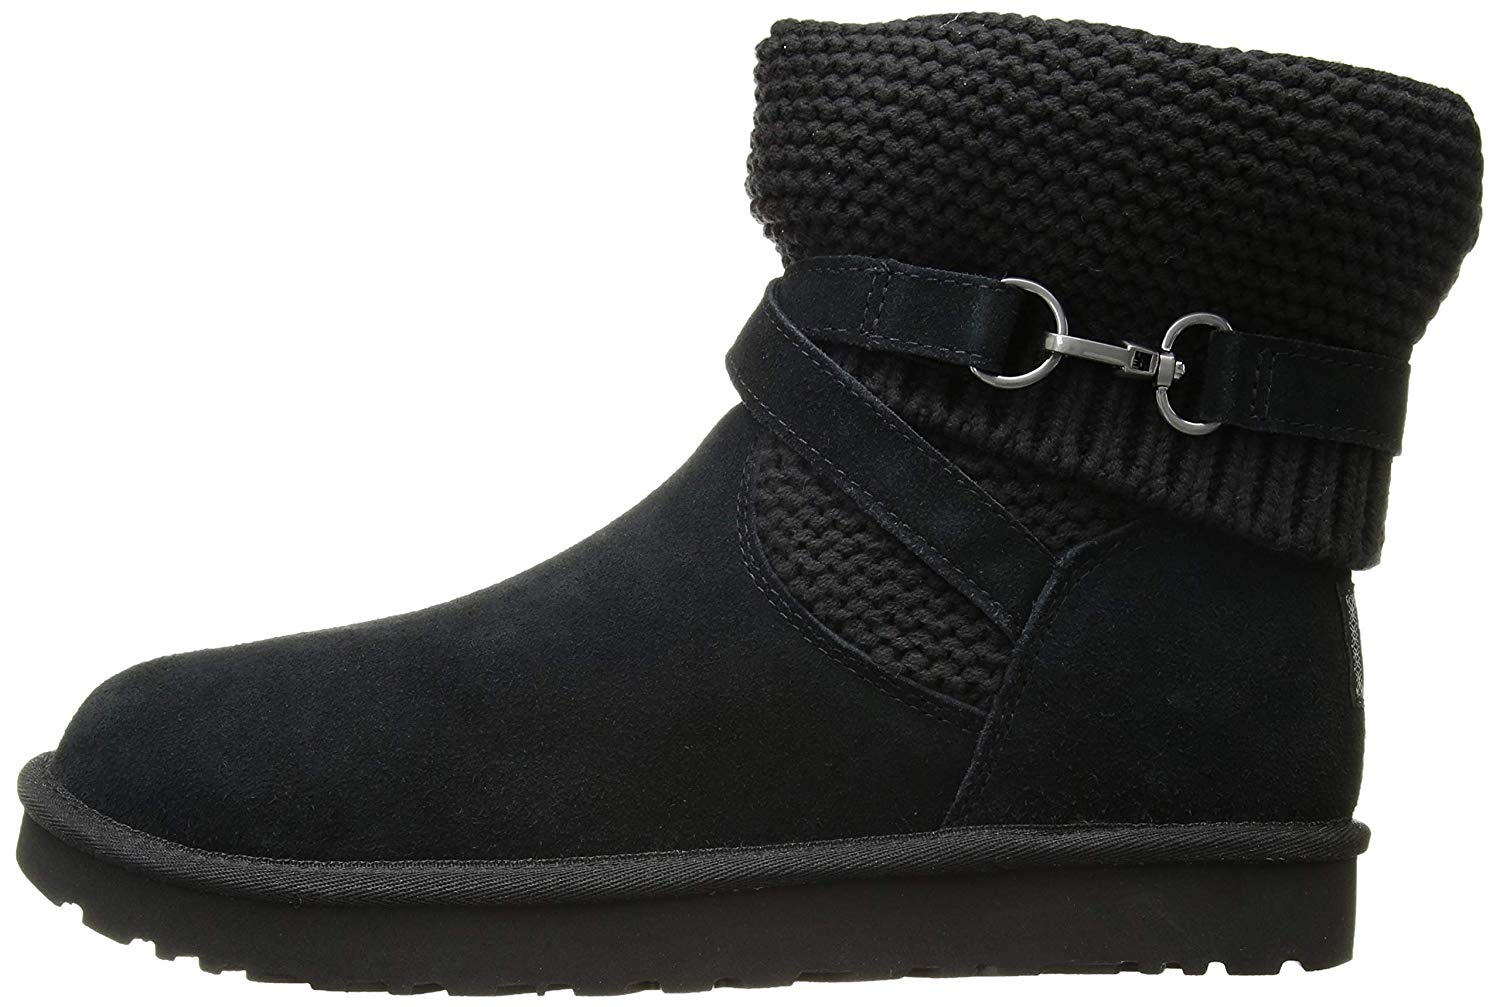 UGG Women's W PURL Strap Fashion Boot, Black, Size 8.0 mbpM | eBay